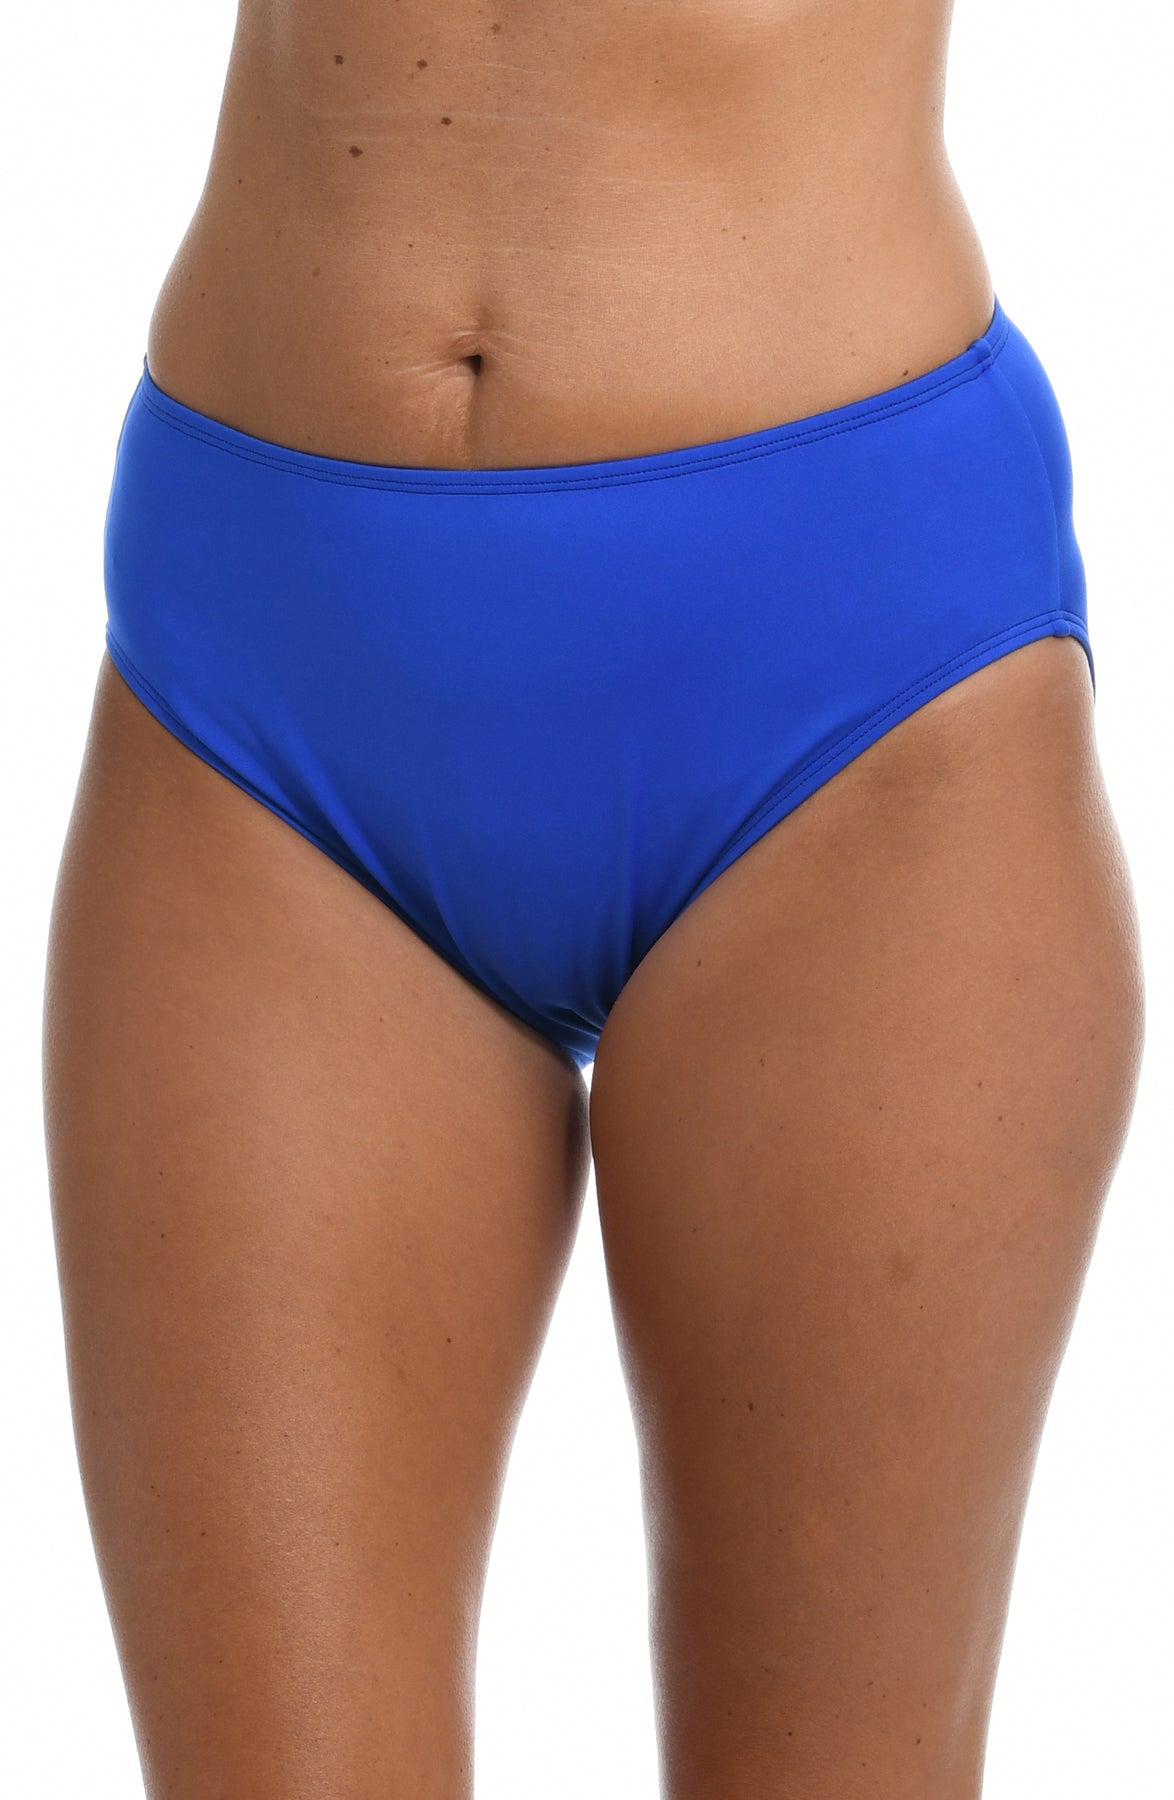 Women's swimming trunks, slip briefs Rosme 60281 - buy at